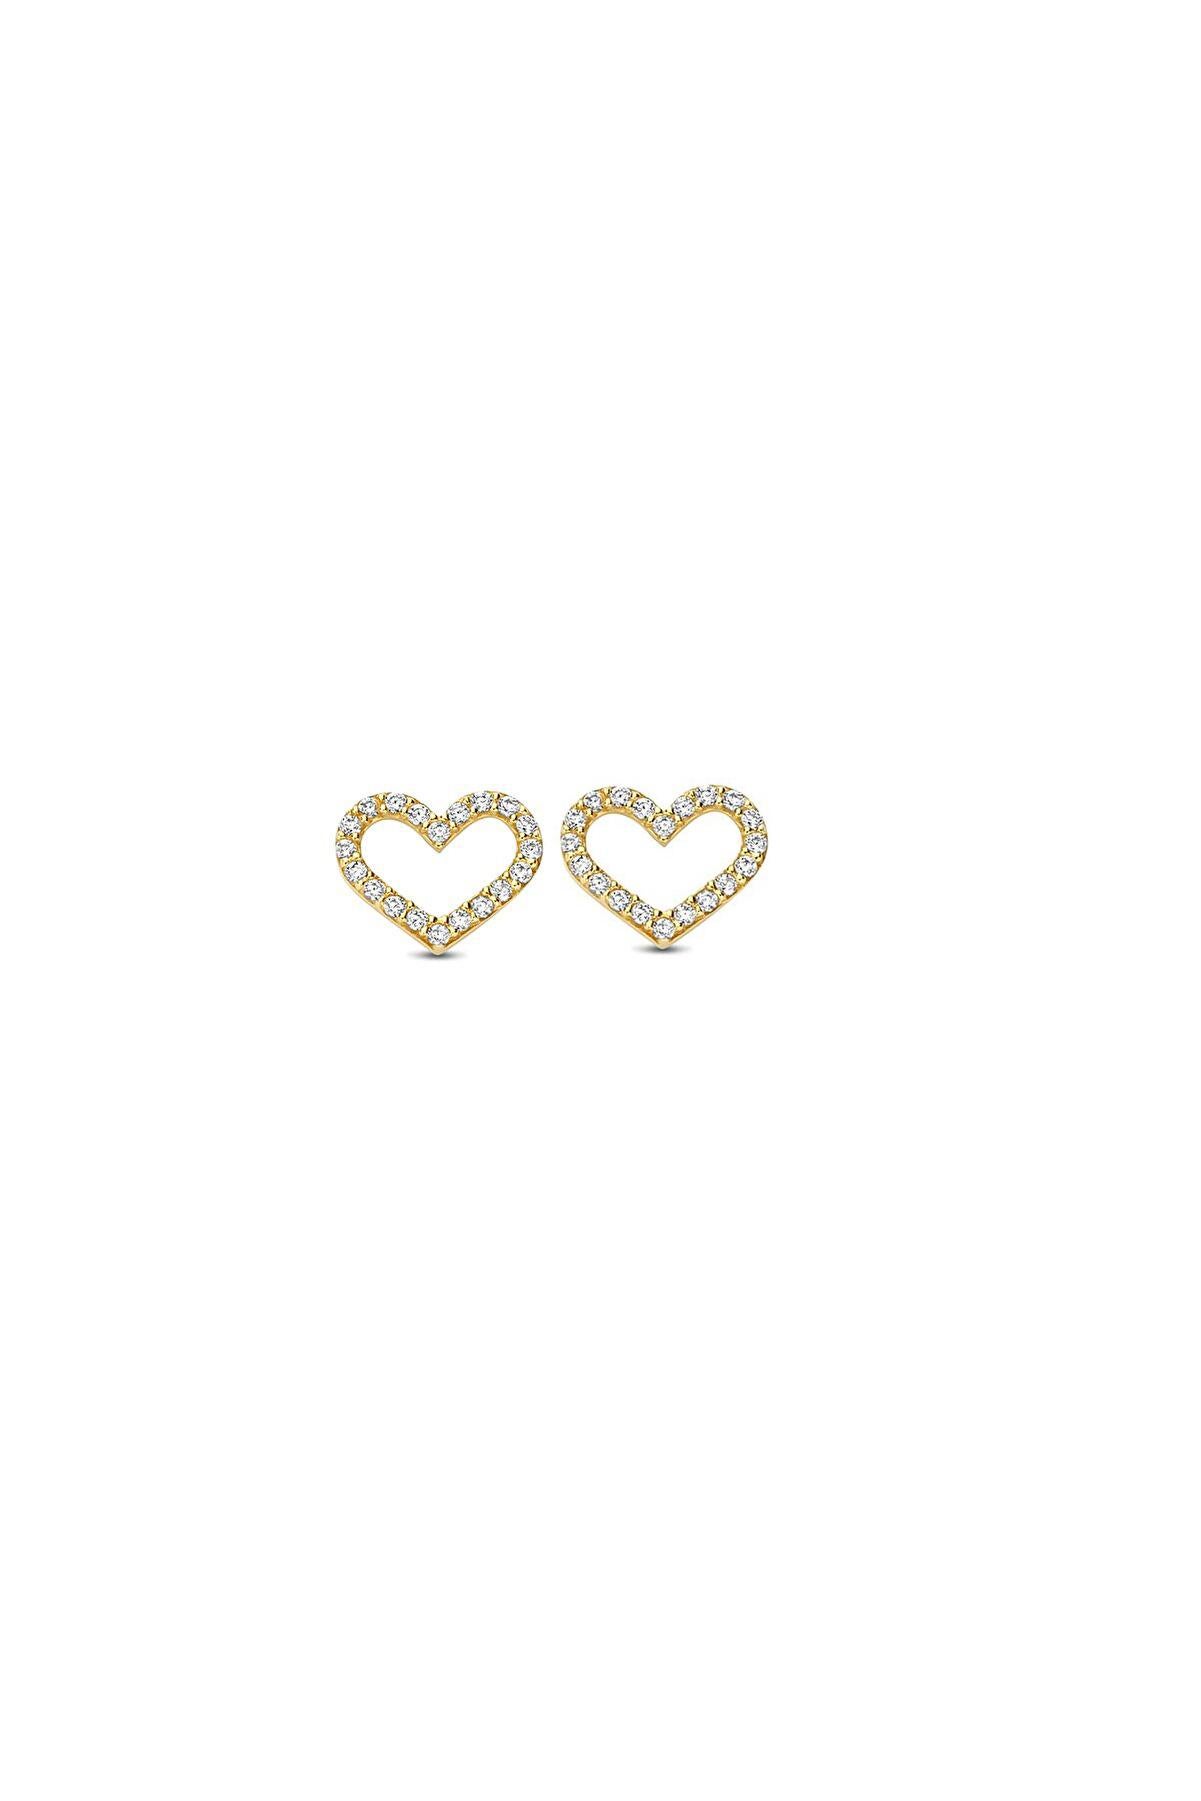 Modern Heart Earrings Studs in 14k Yellow Gold For Sale